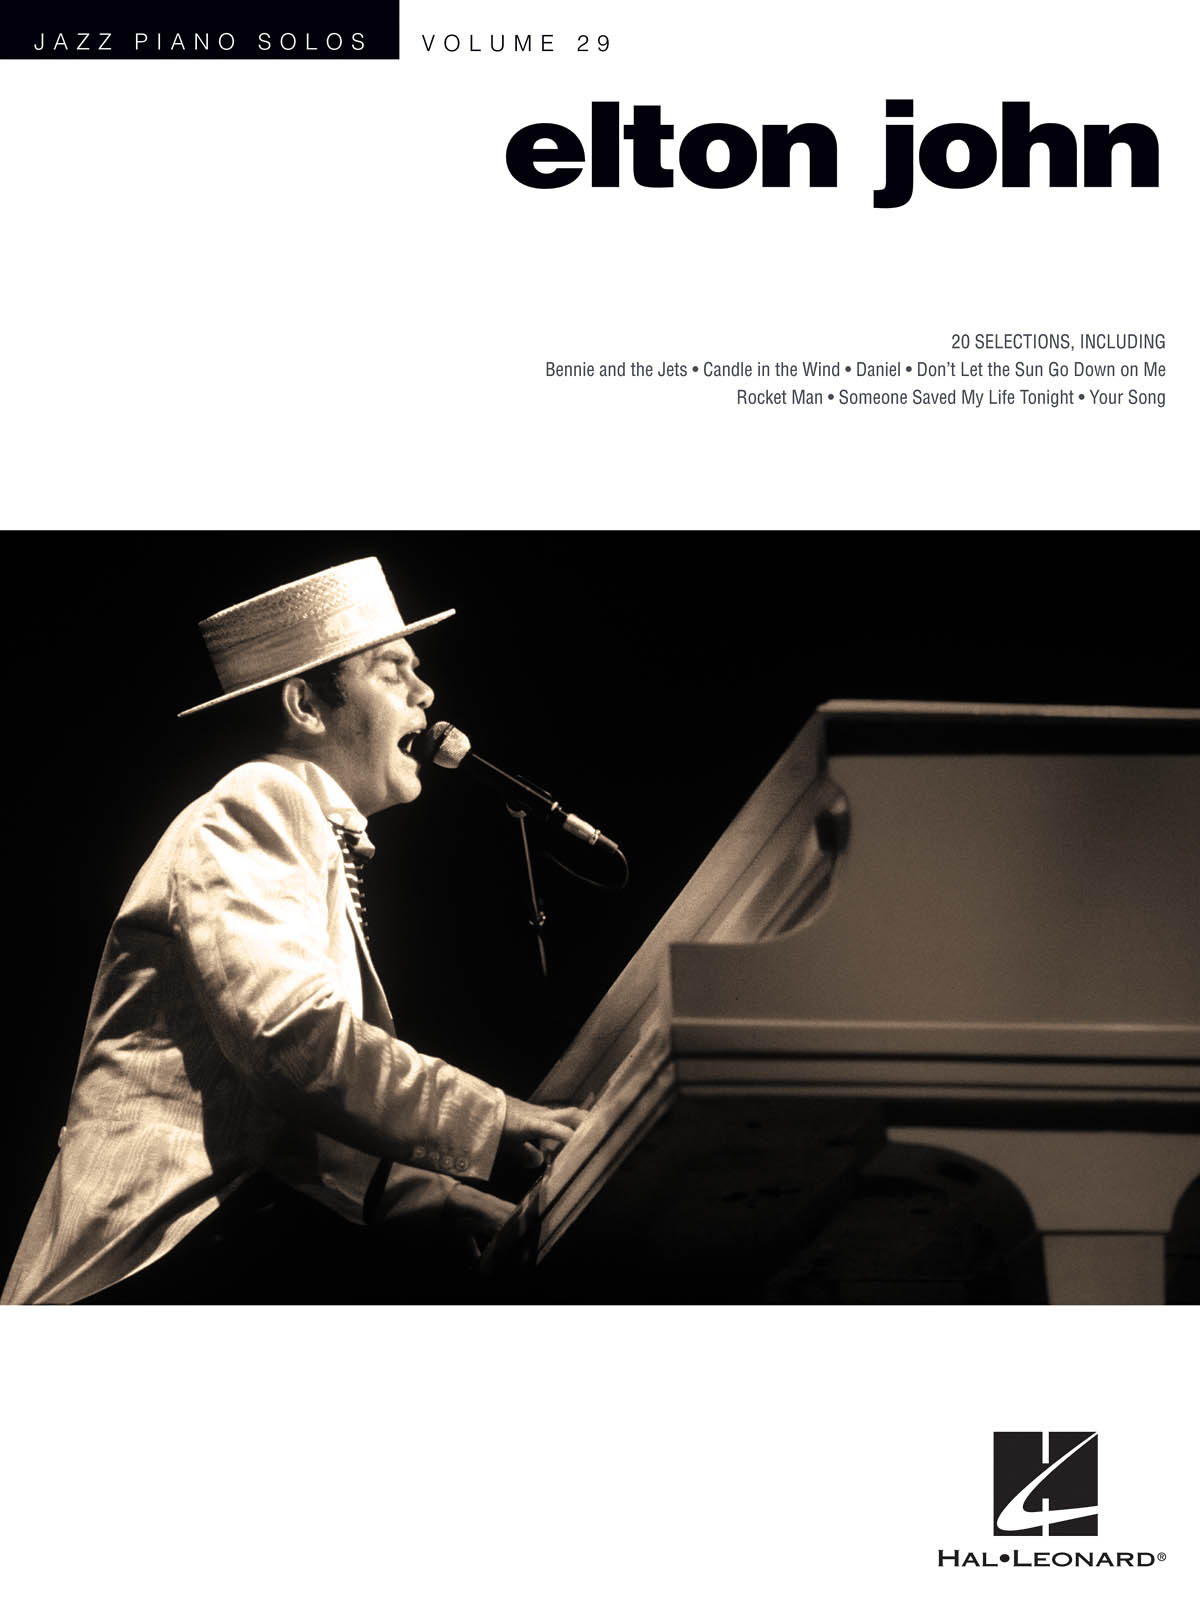 Jazz Piano Solo Series Volume 29: Elton John